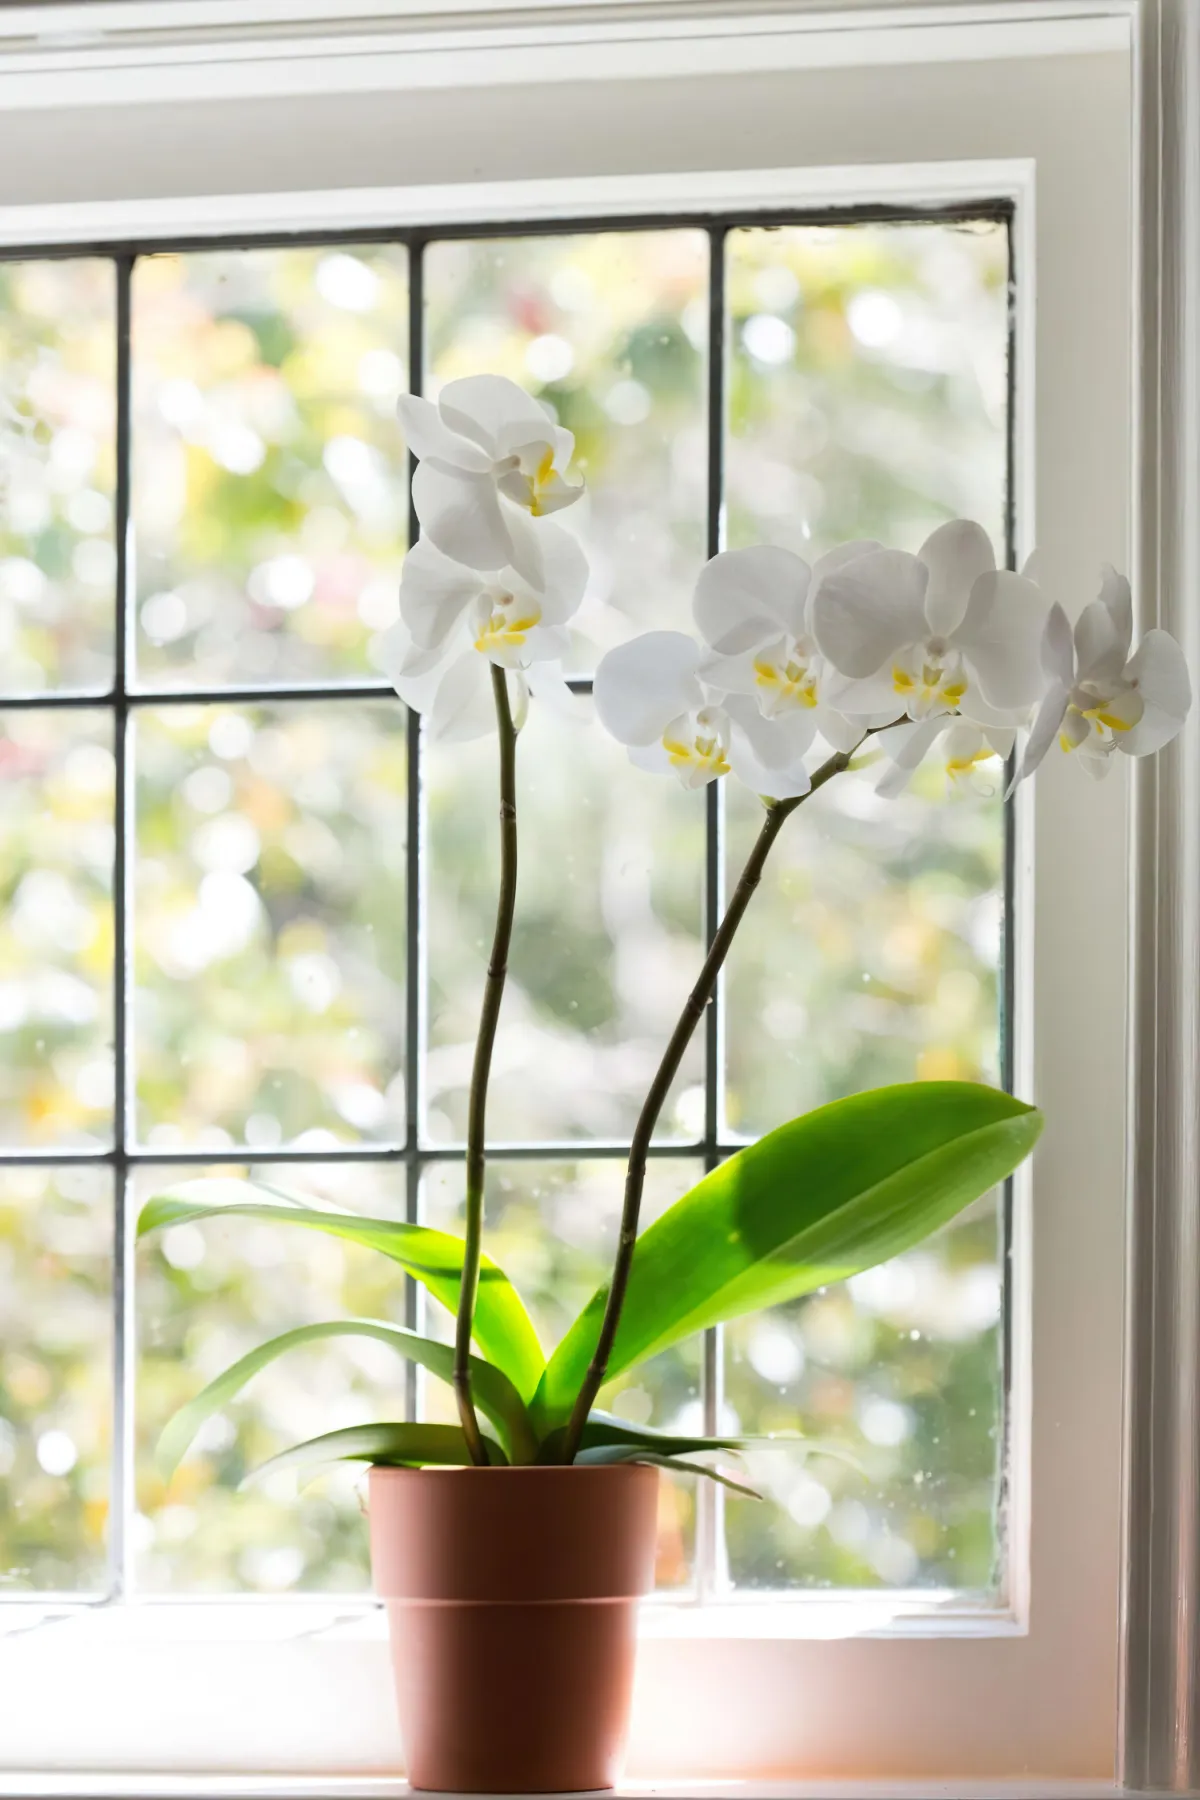 comment faire refleurir une orchidee tout le temps